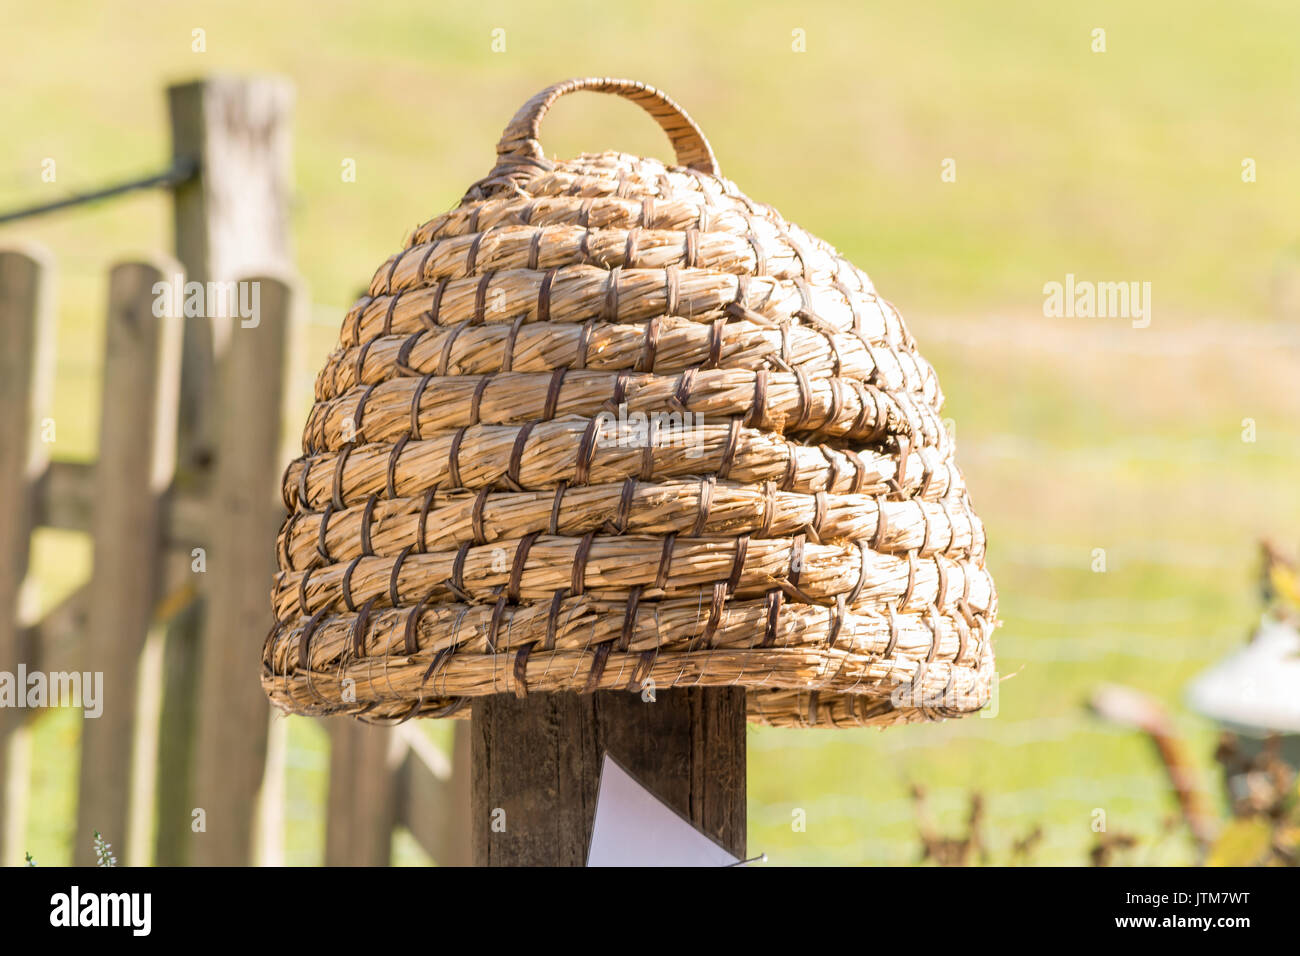 Alter Bienenkorb, Bienenstöcke von Stroh als Korb Bienenhaltung ist eine uralte Tradition. Stockfoto